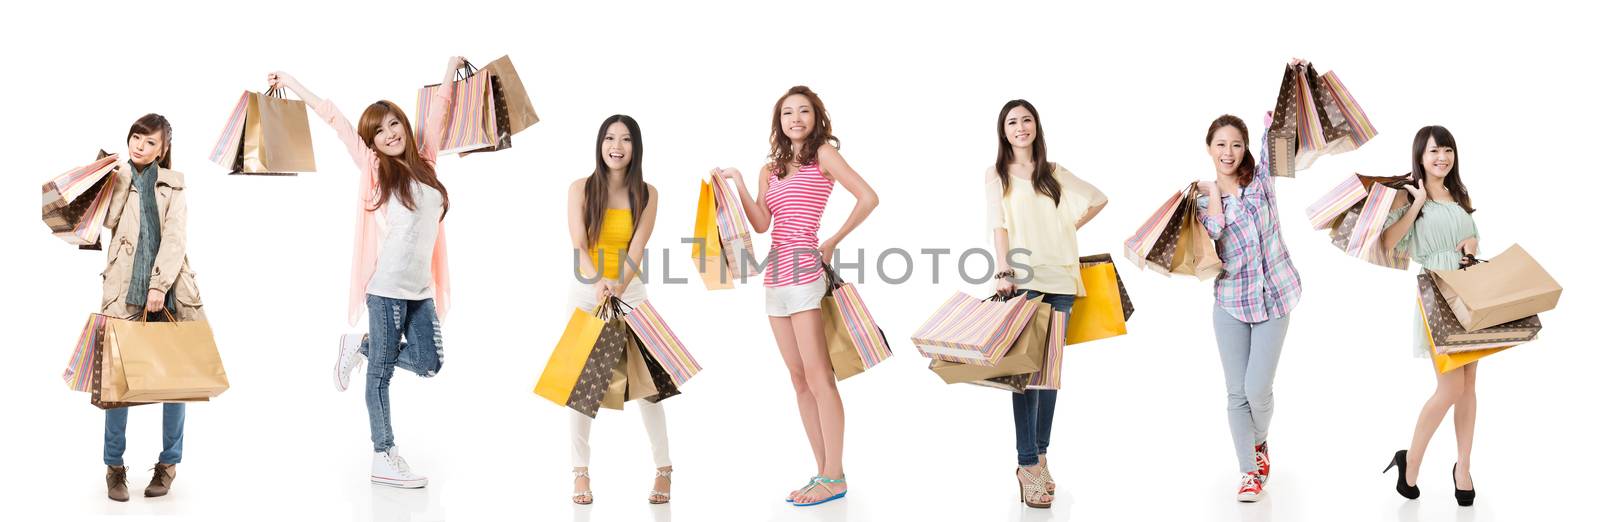 women shopping by elwynn